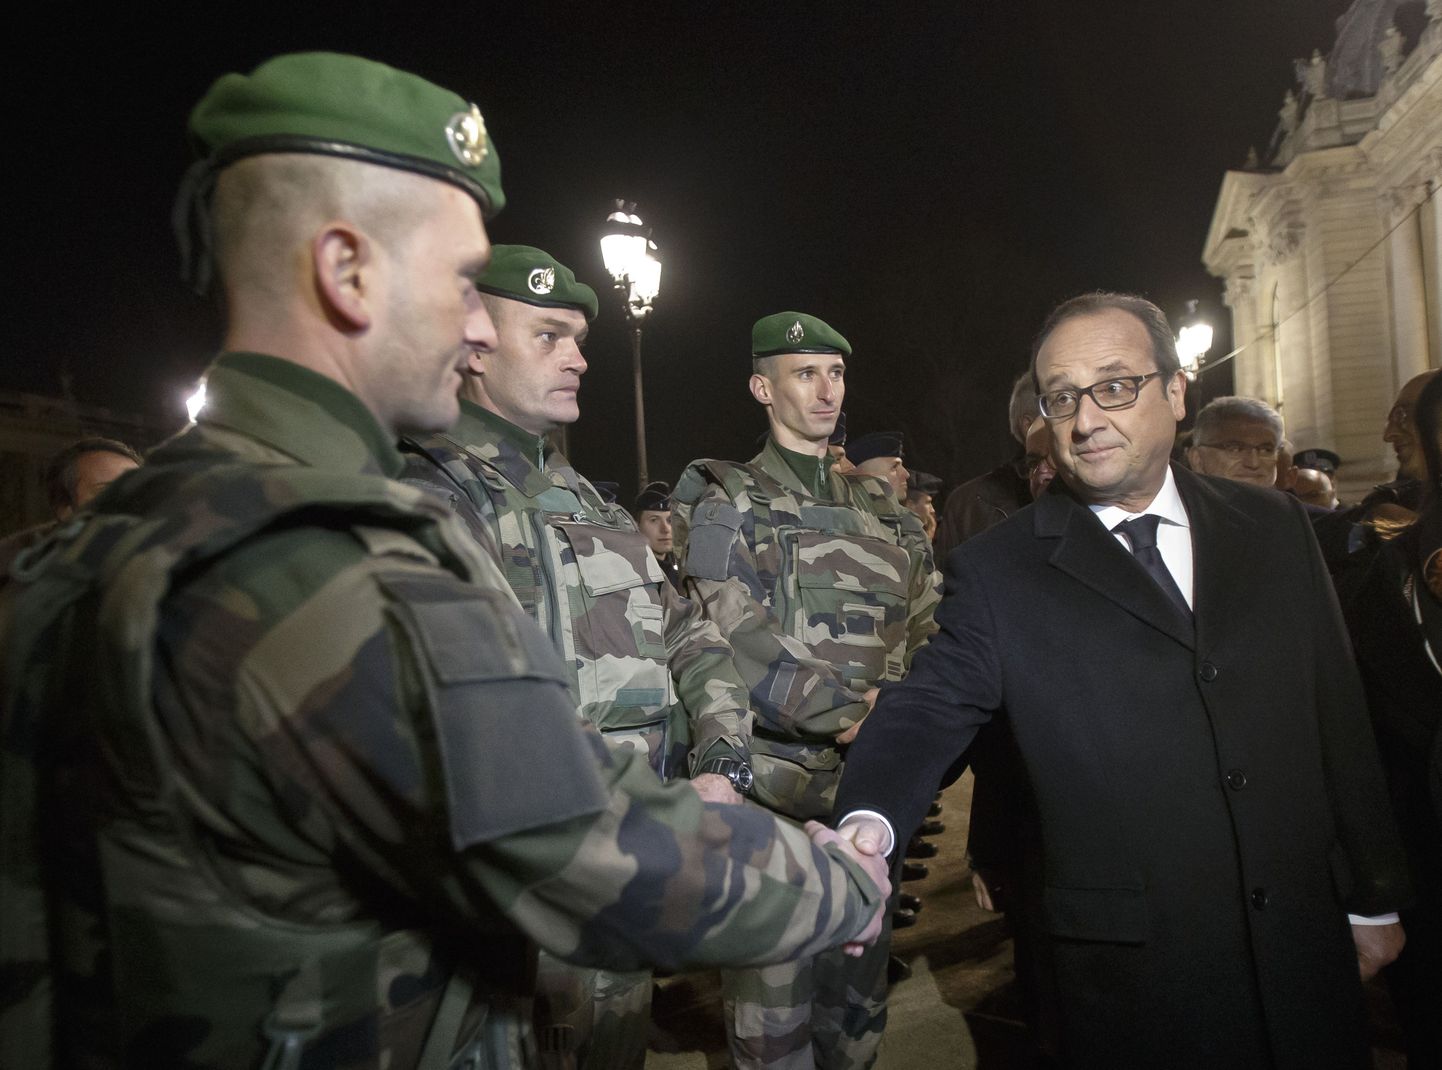 François Hollande surumas kätt võõrleegionäridel, kes valvavad Élysée paleed